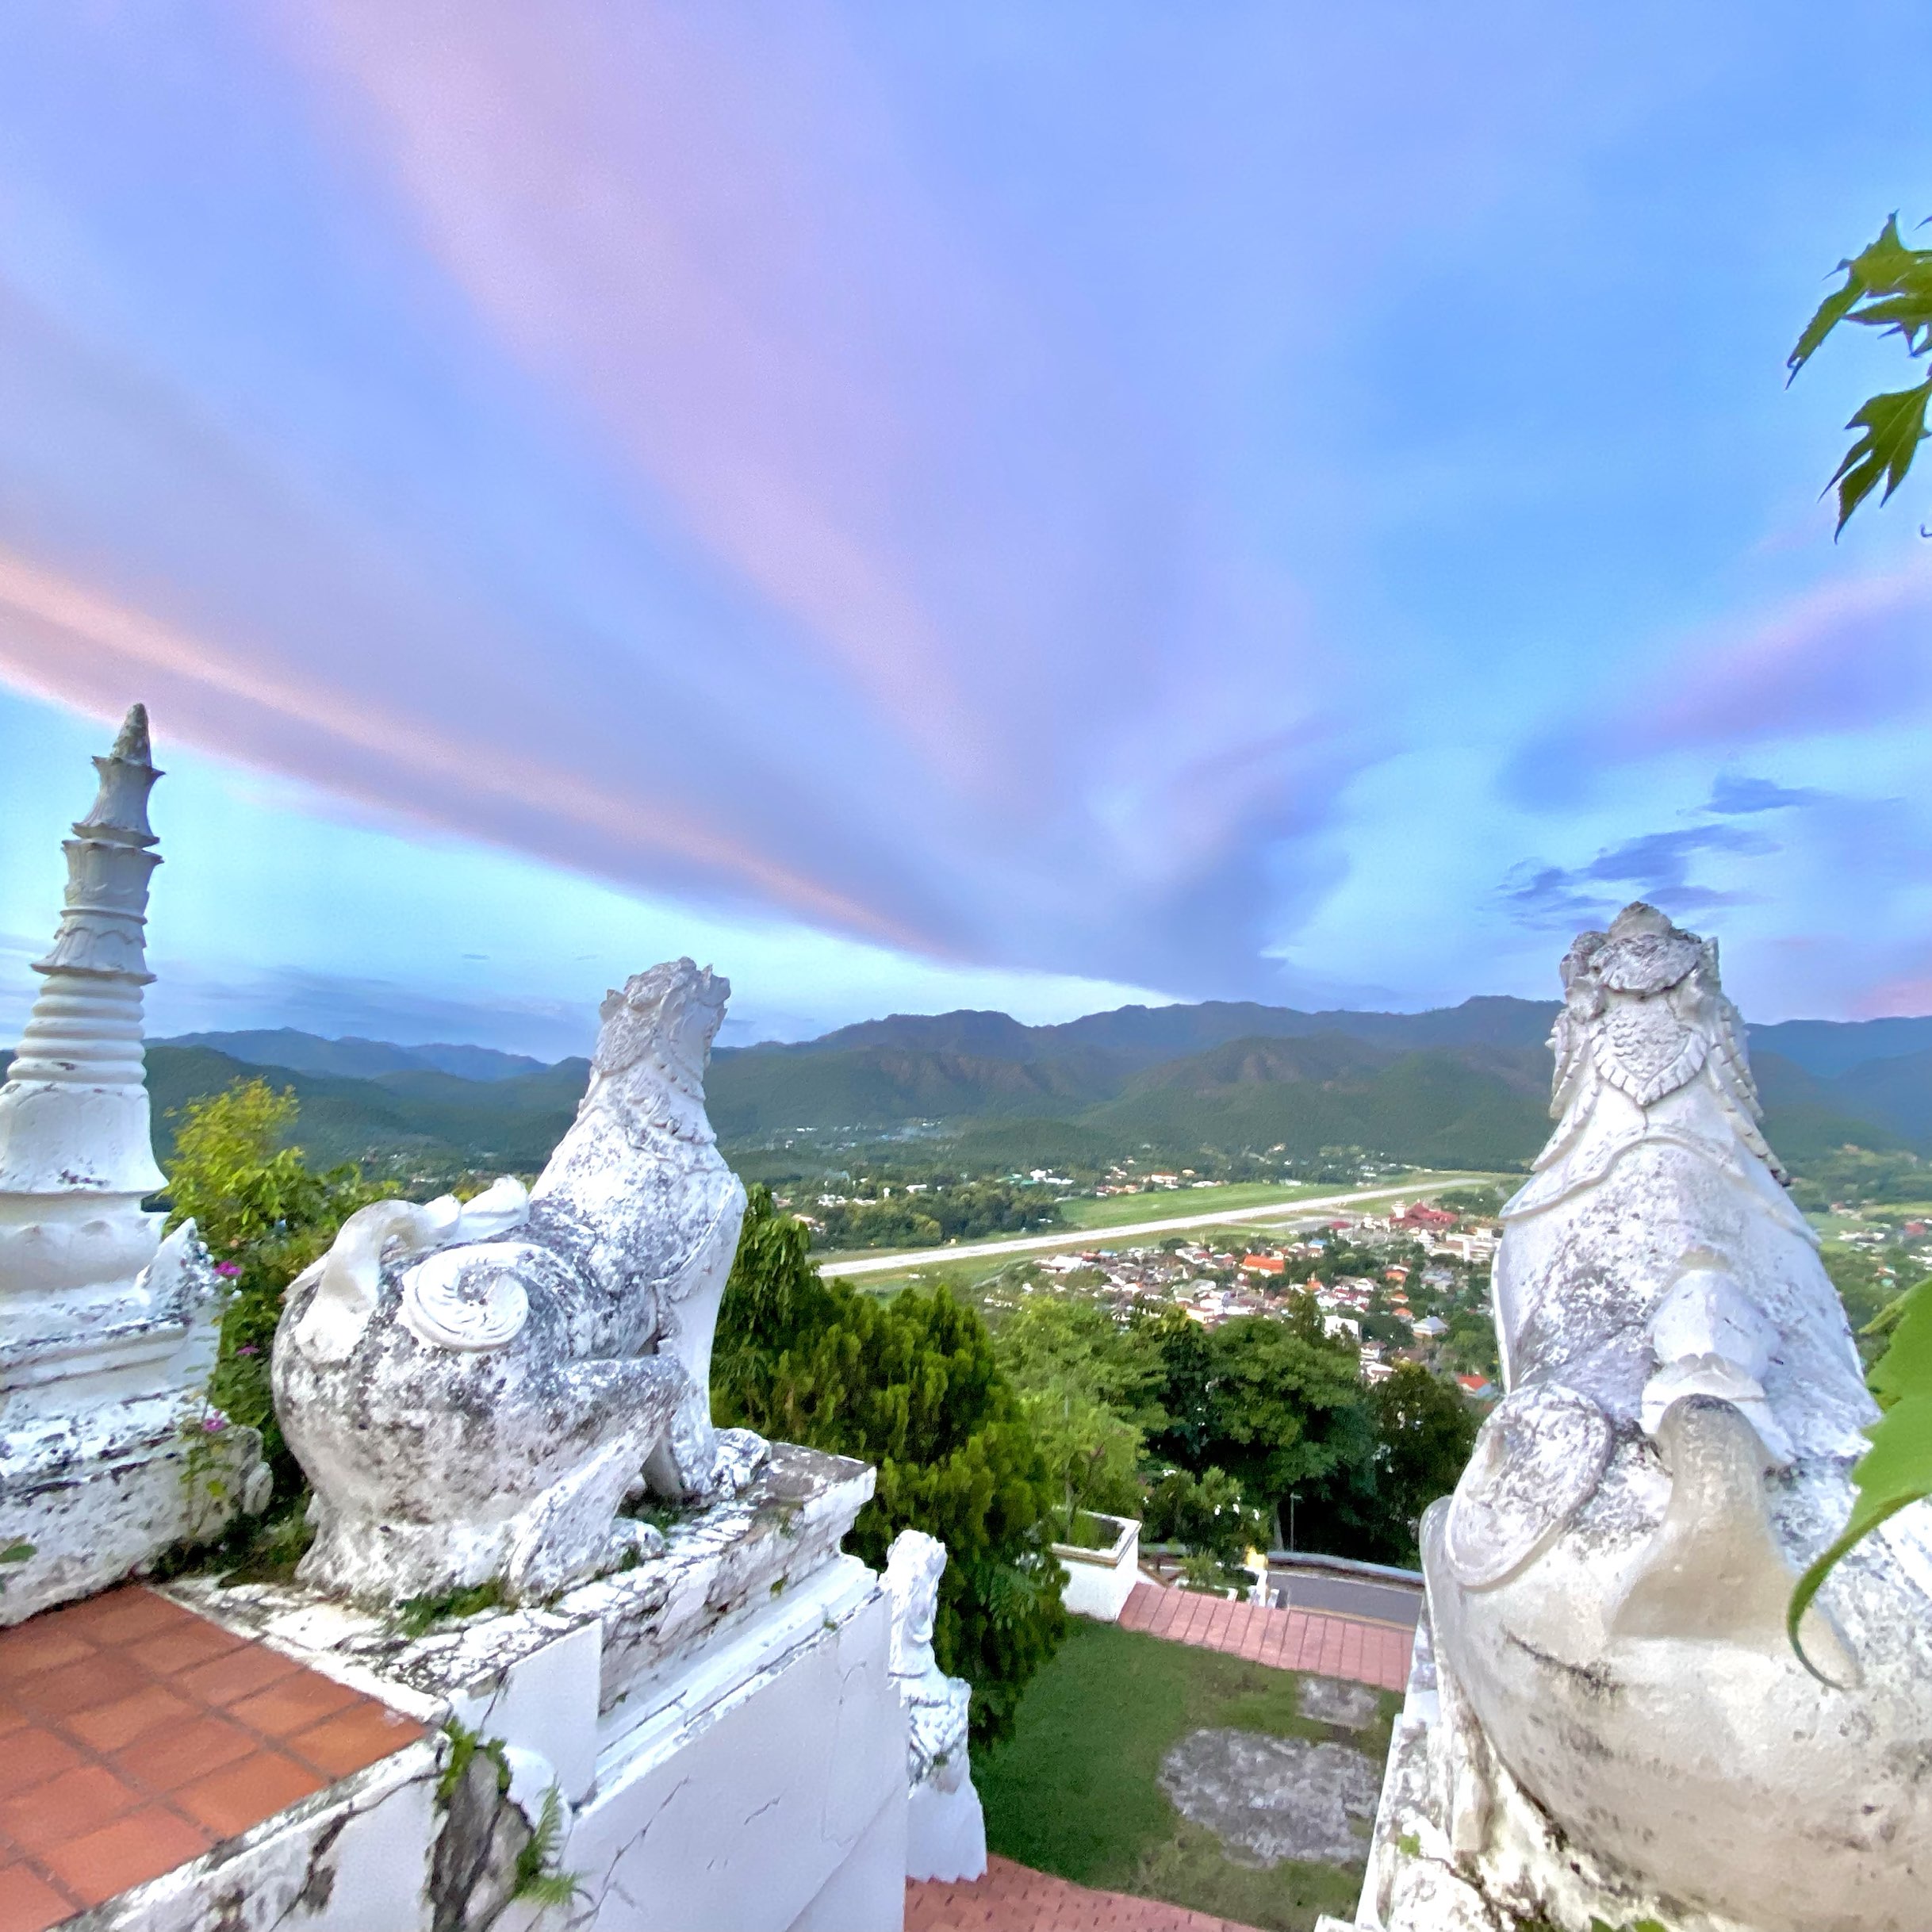 Wat Phra That Doi Kong Mu夜丰颂府 在 Doi Kong Mu 顶部突出的白